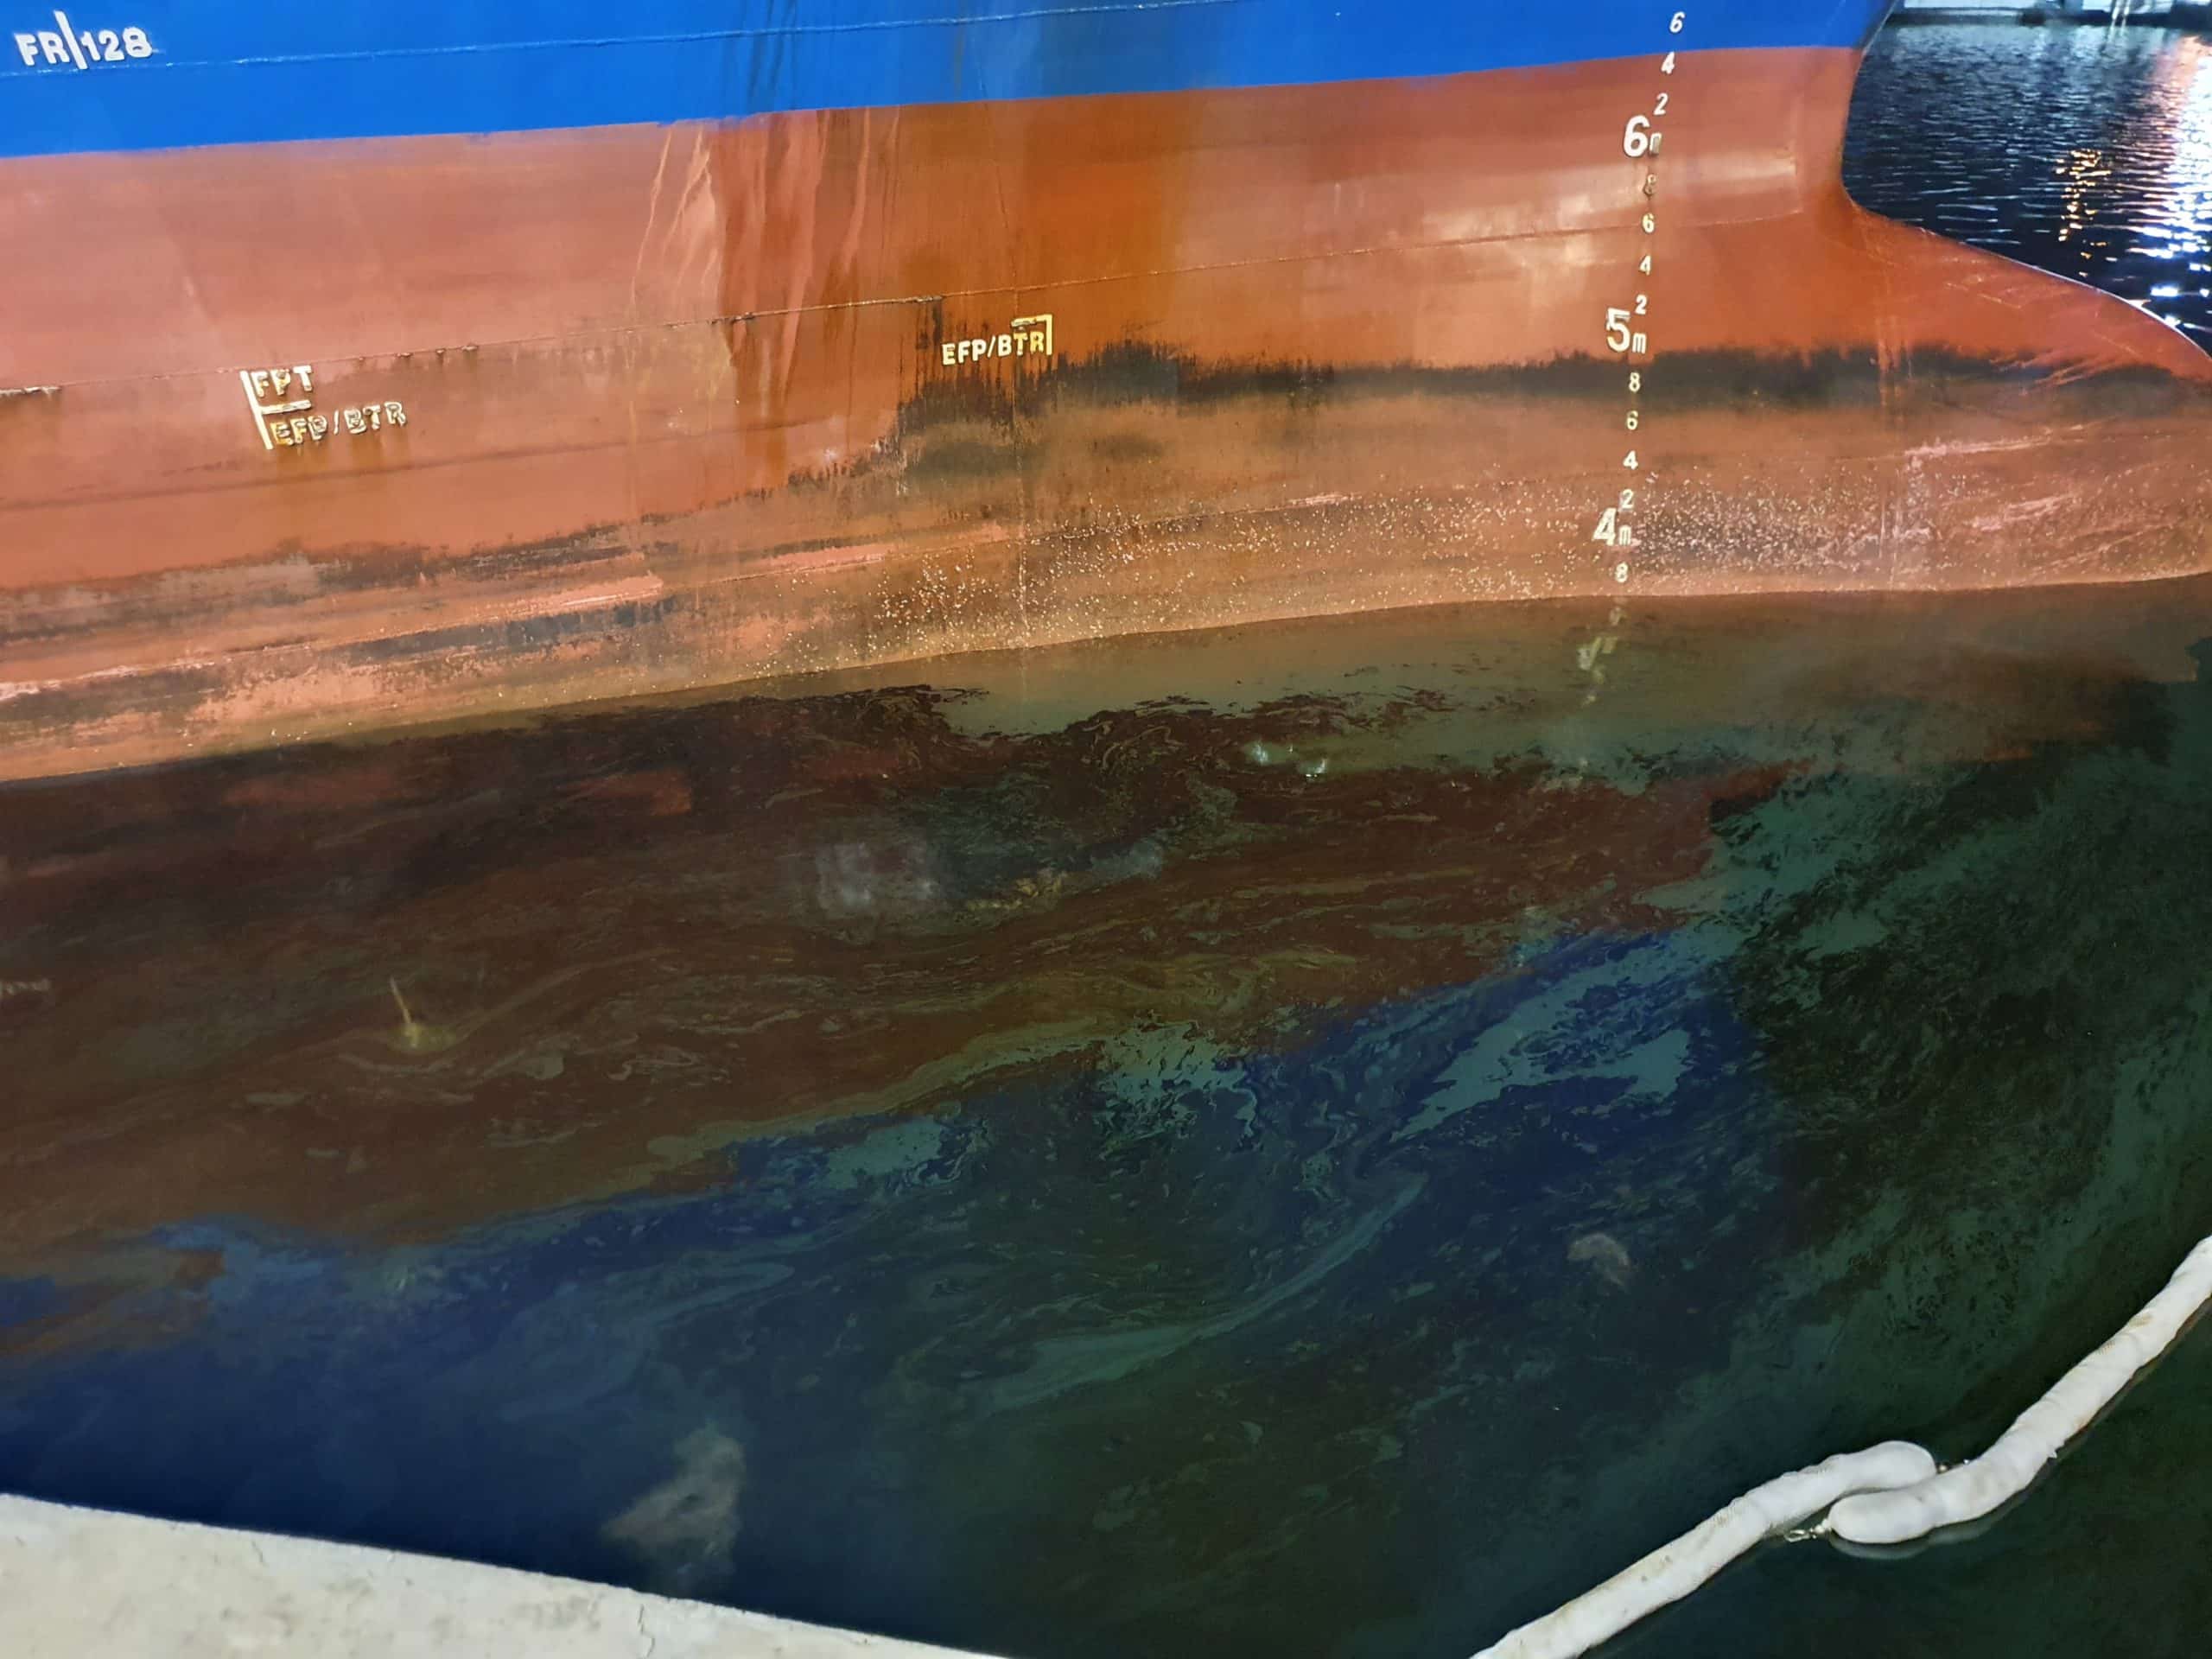 זיהום מי ים מאונית ALEXANDRIA. צילום התחנה הצפונית יחידה ארצית להגנת הסביבה הימית המשרד להגנת הסביבה 1 scaled